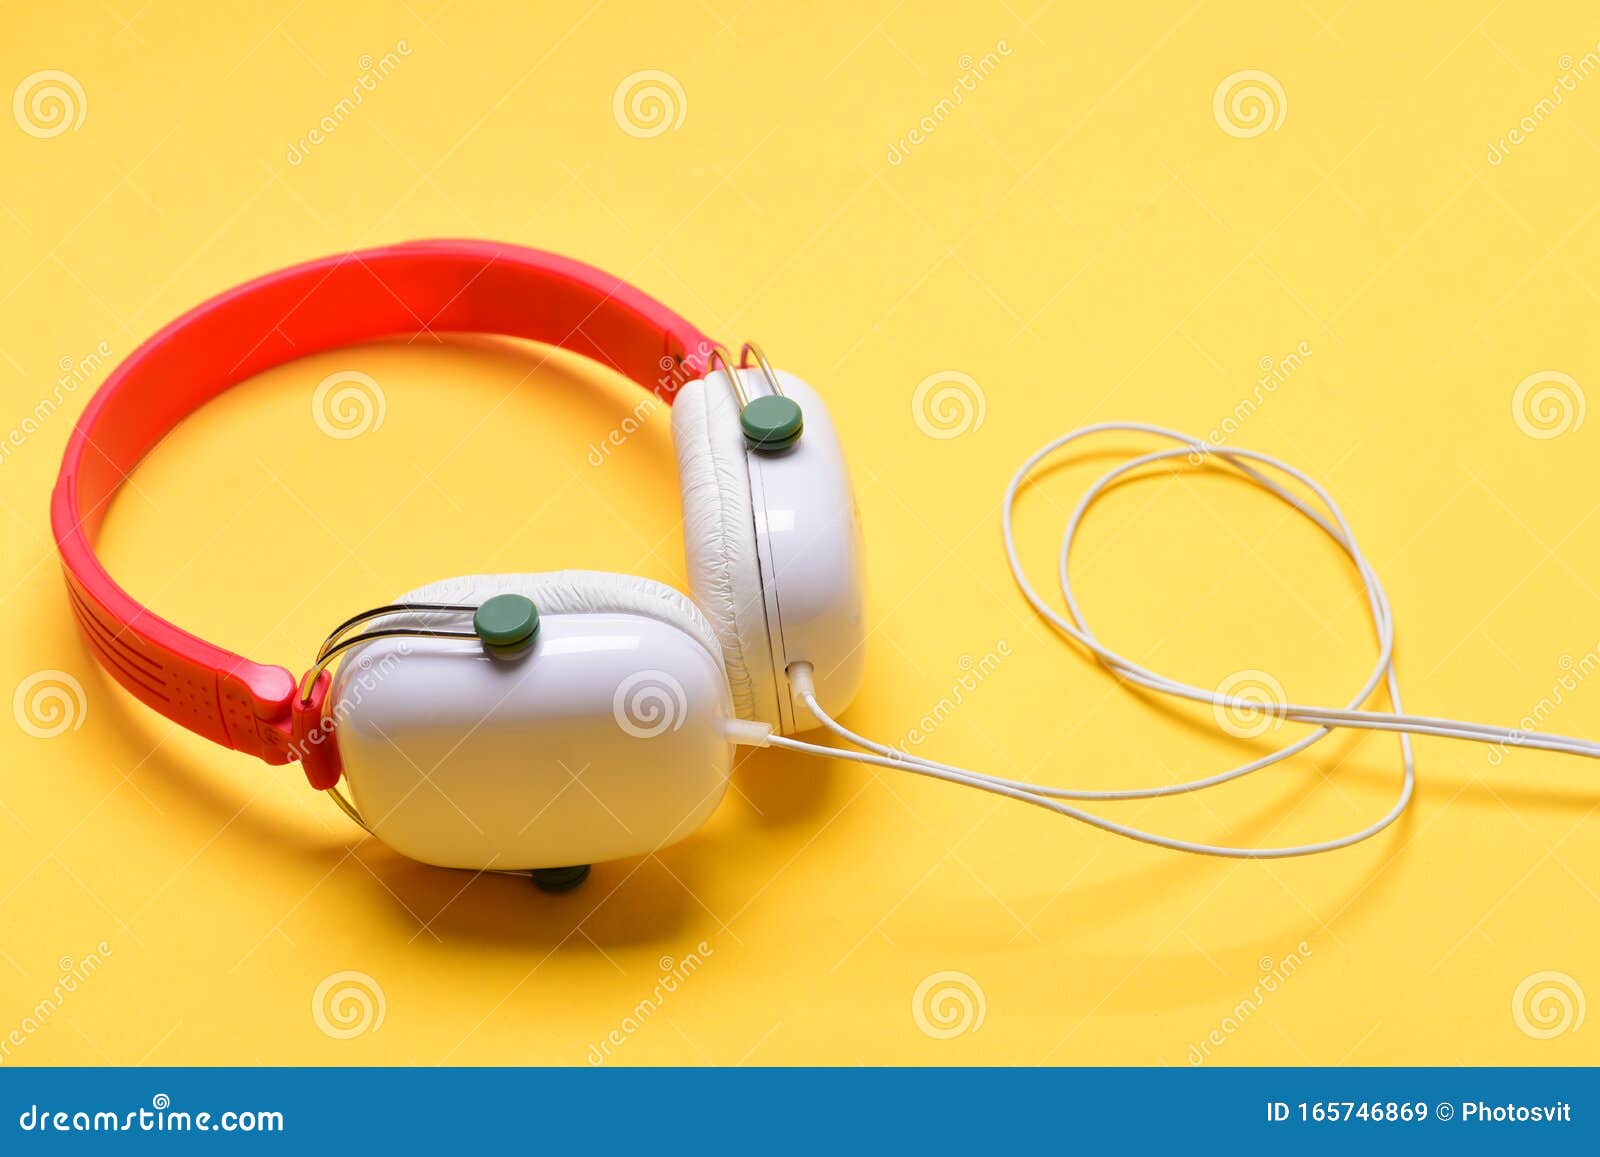 Auriculares De Color Blanco Y Rojo Con Cable Largo Imagen de archivo -  Imagen de sonido, estéreo: 165746869